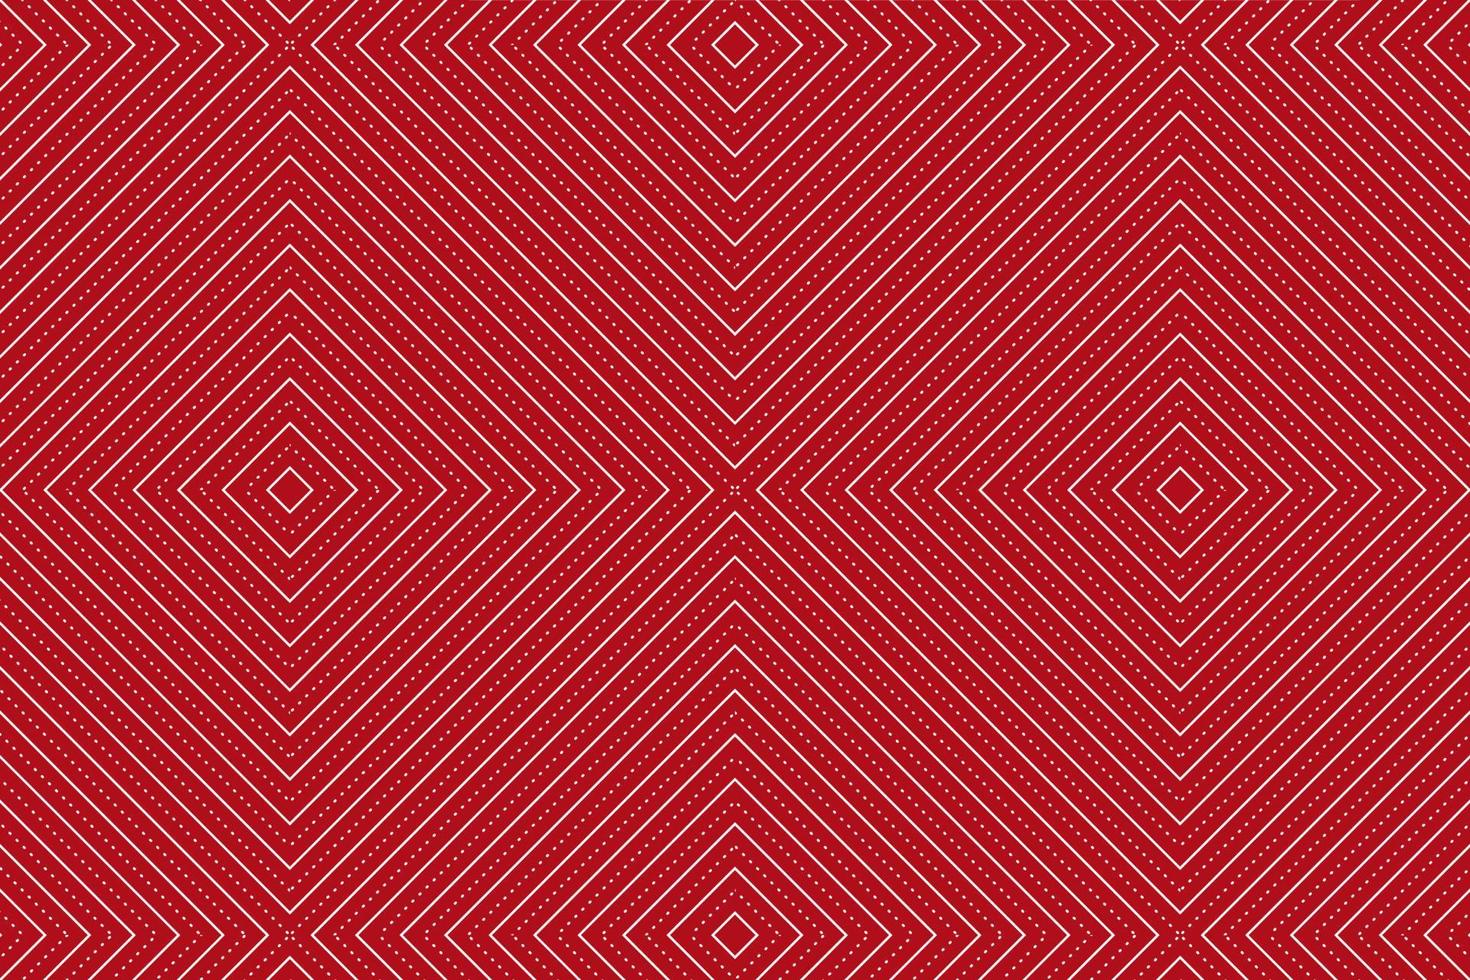 geometrische rode achtergrond met lijnen die een driehoekig patroon vormen vector